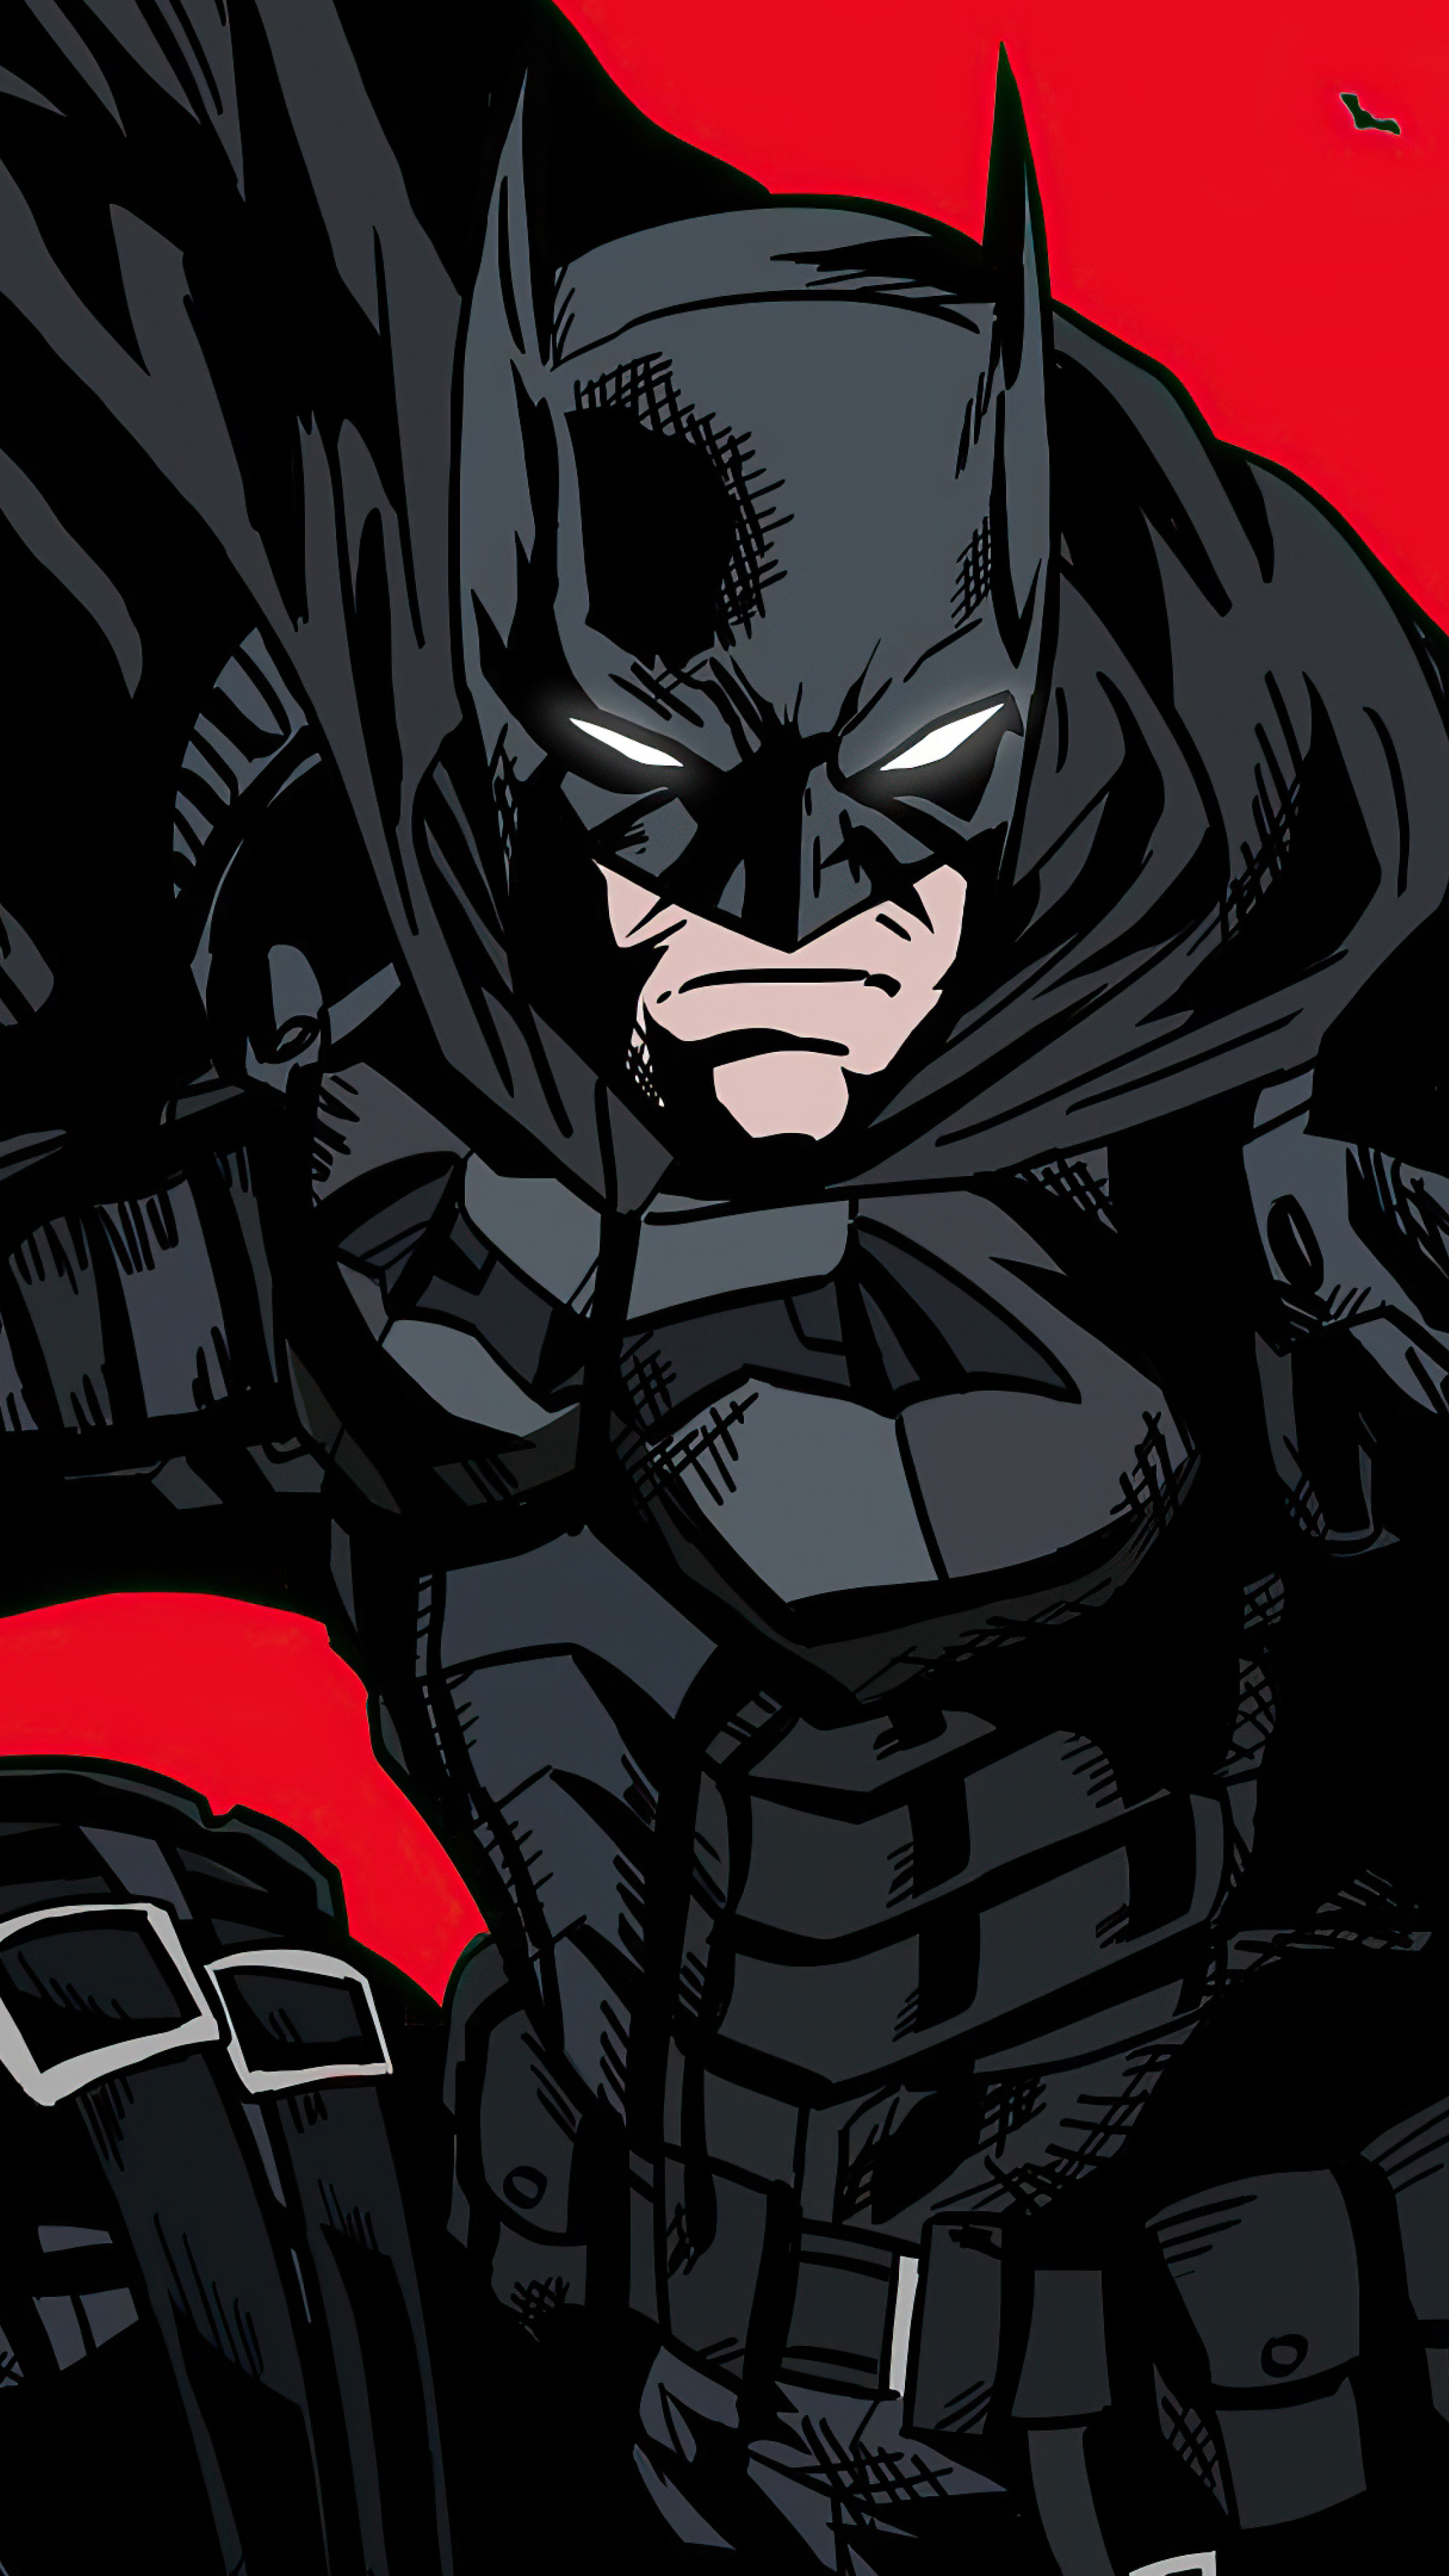 Hình nền Batman: Những hình nền Batman chắc chắn sẽ khiến bạn phải say đắm với vẻ đẹp huyền thoại của siêu anh hùng này. Cùng khám phá những hình nền tràn ngập sự mạnh mẽ và bá đạo của Batman ngay hôm nay!